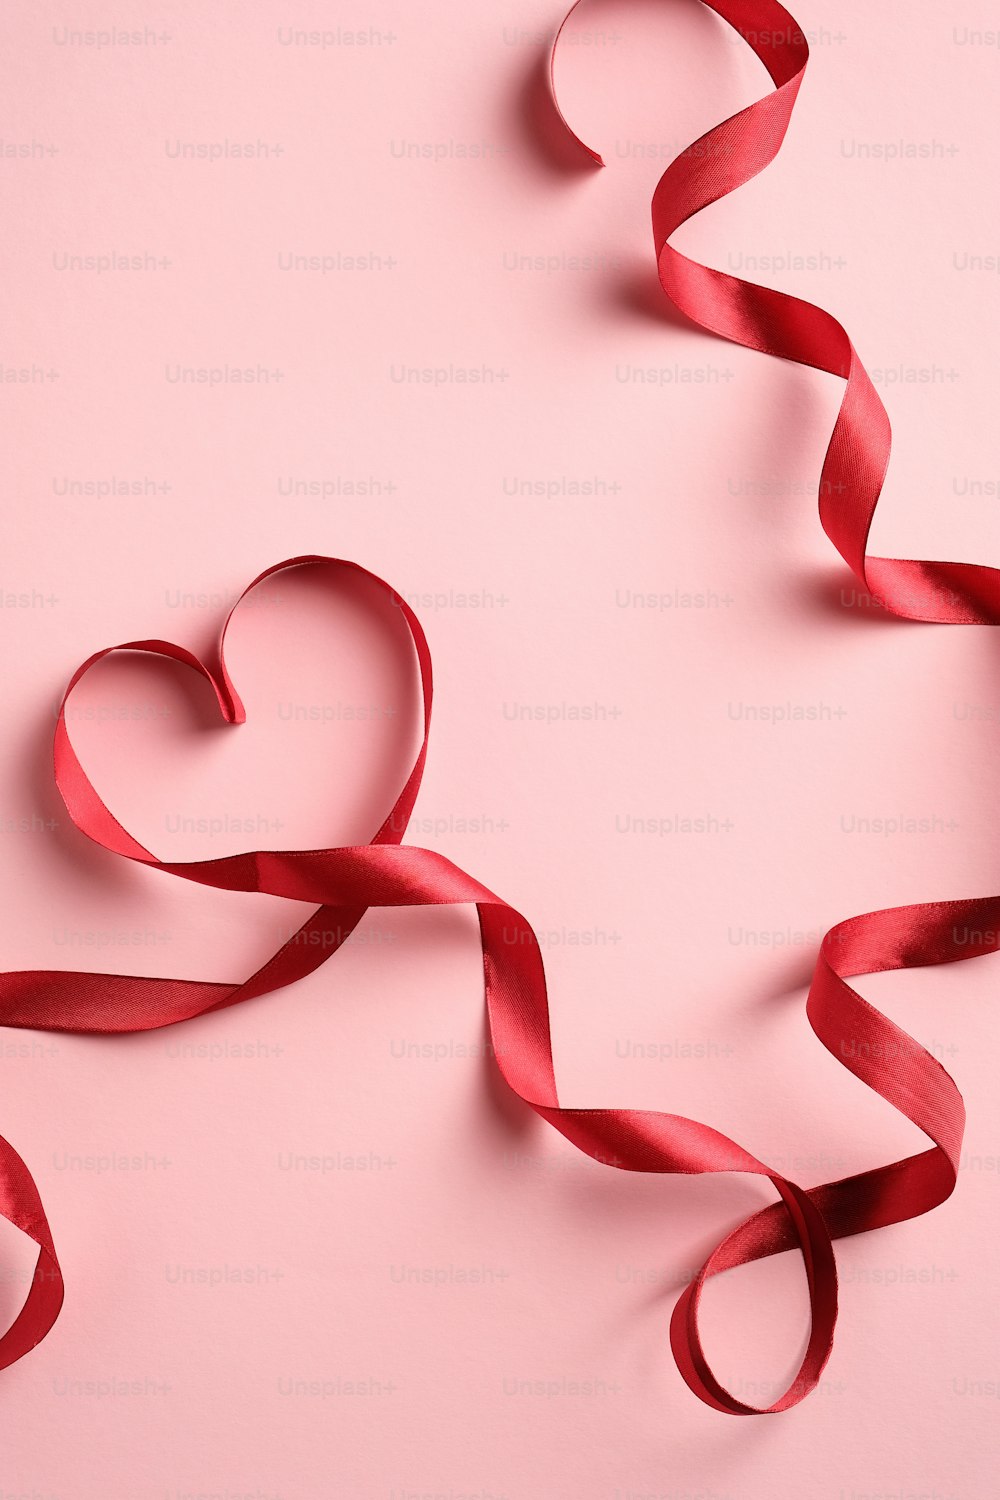 Herzförmiges rotes Band auf rosa Hintergrund. Liebe, Romantik-Konzept. Vorlage für Grußkarten zum Valentinstag oder zum Muttertag.